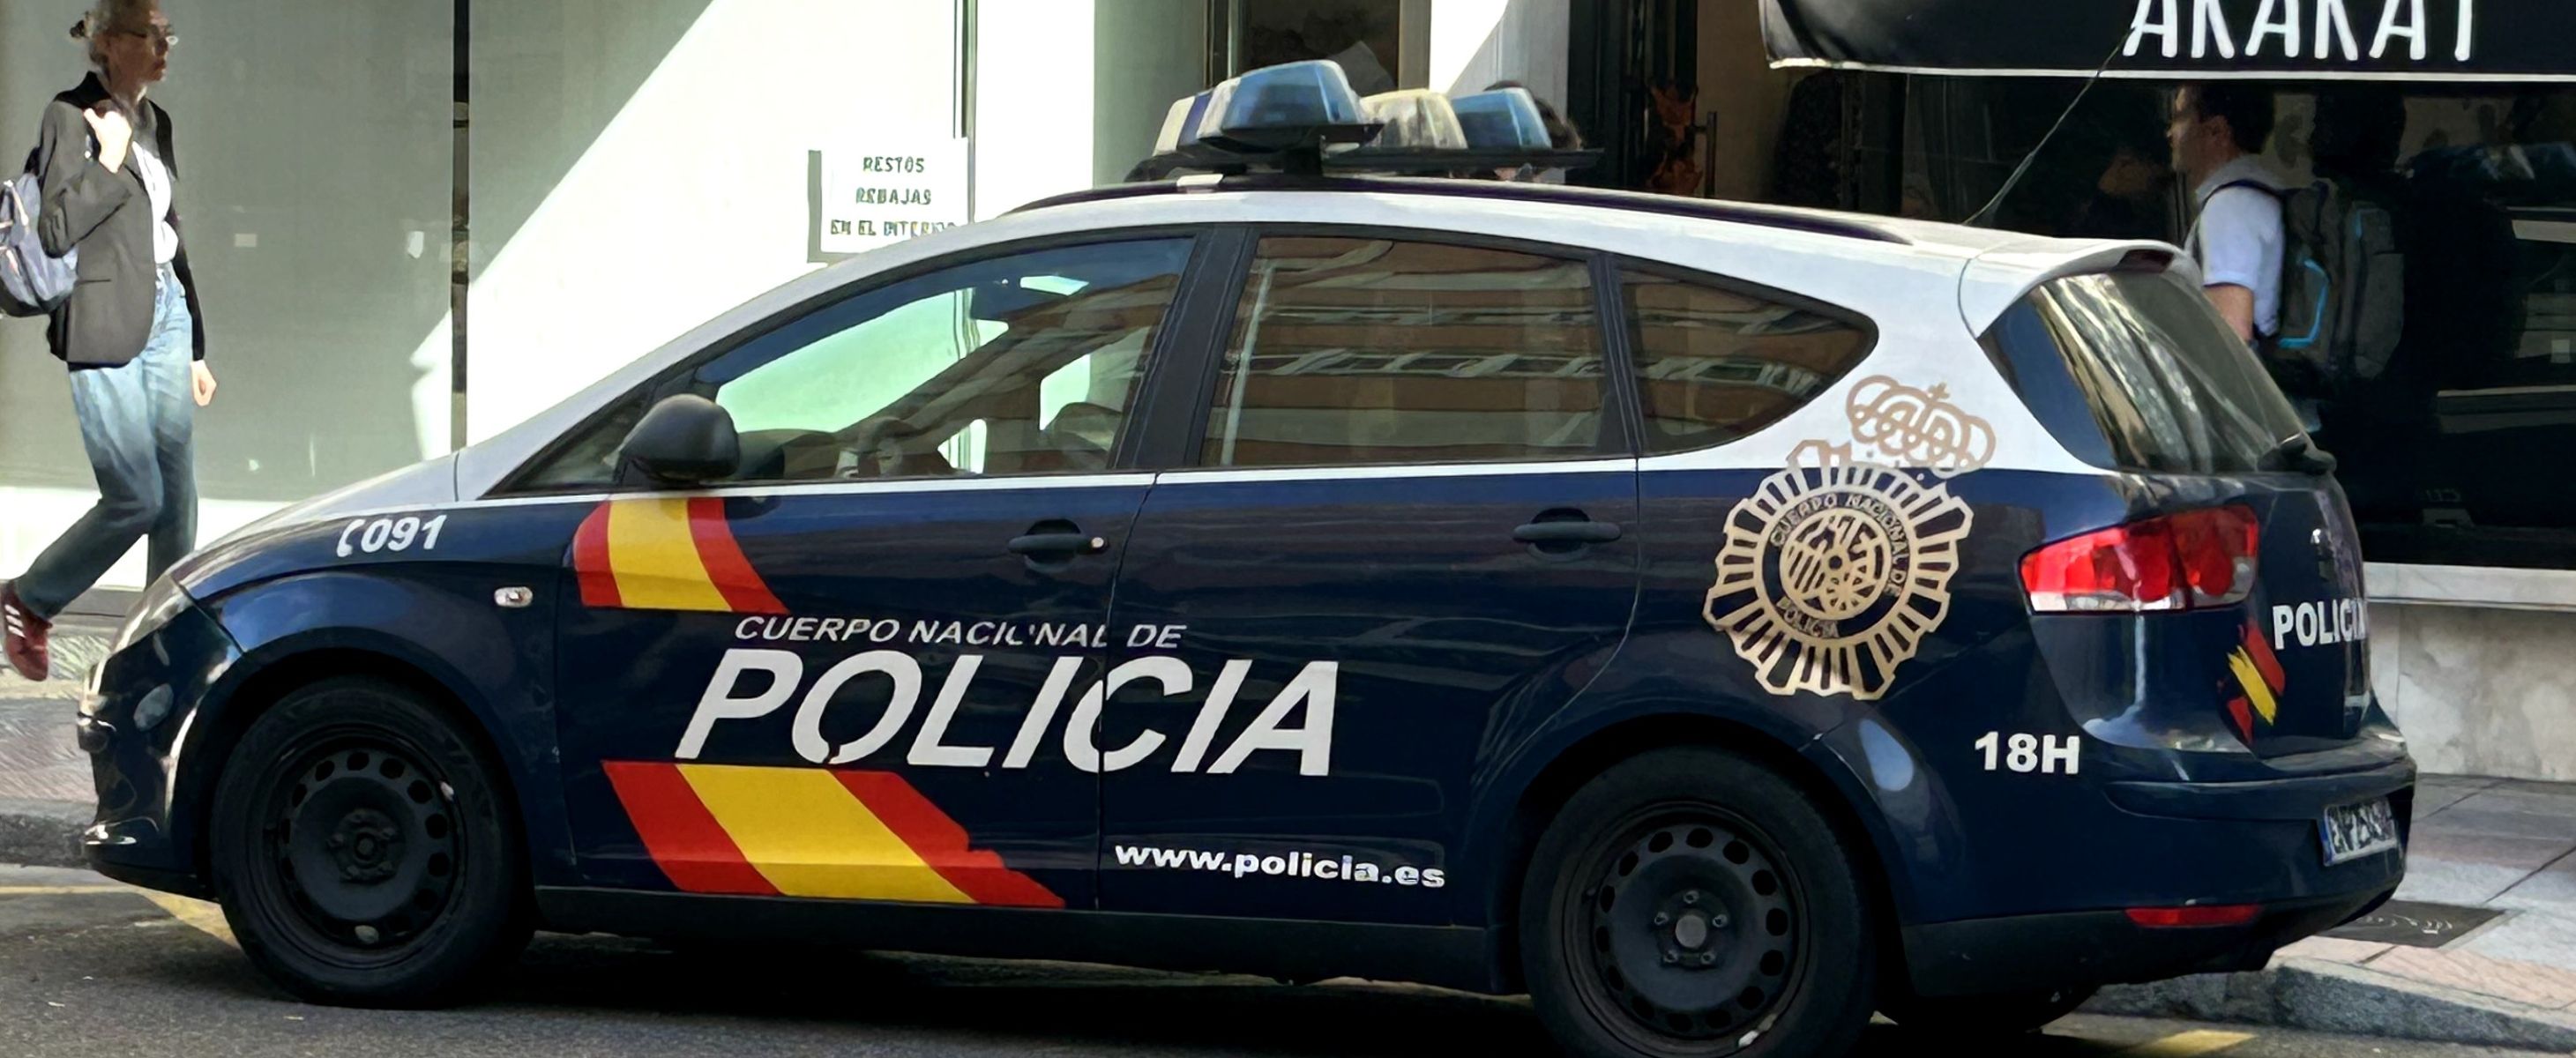 Policías de Leon y Gijón desarticulan una banda de narcos con 50 kilos de coca en Galicia